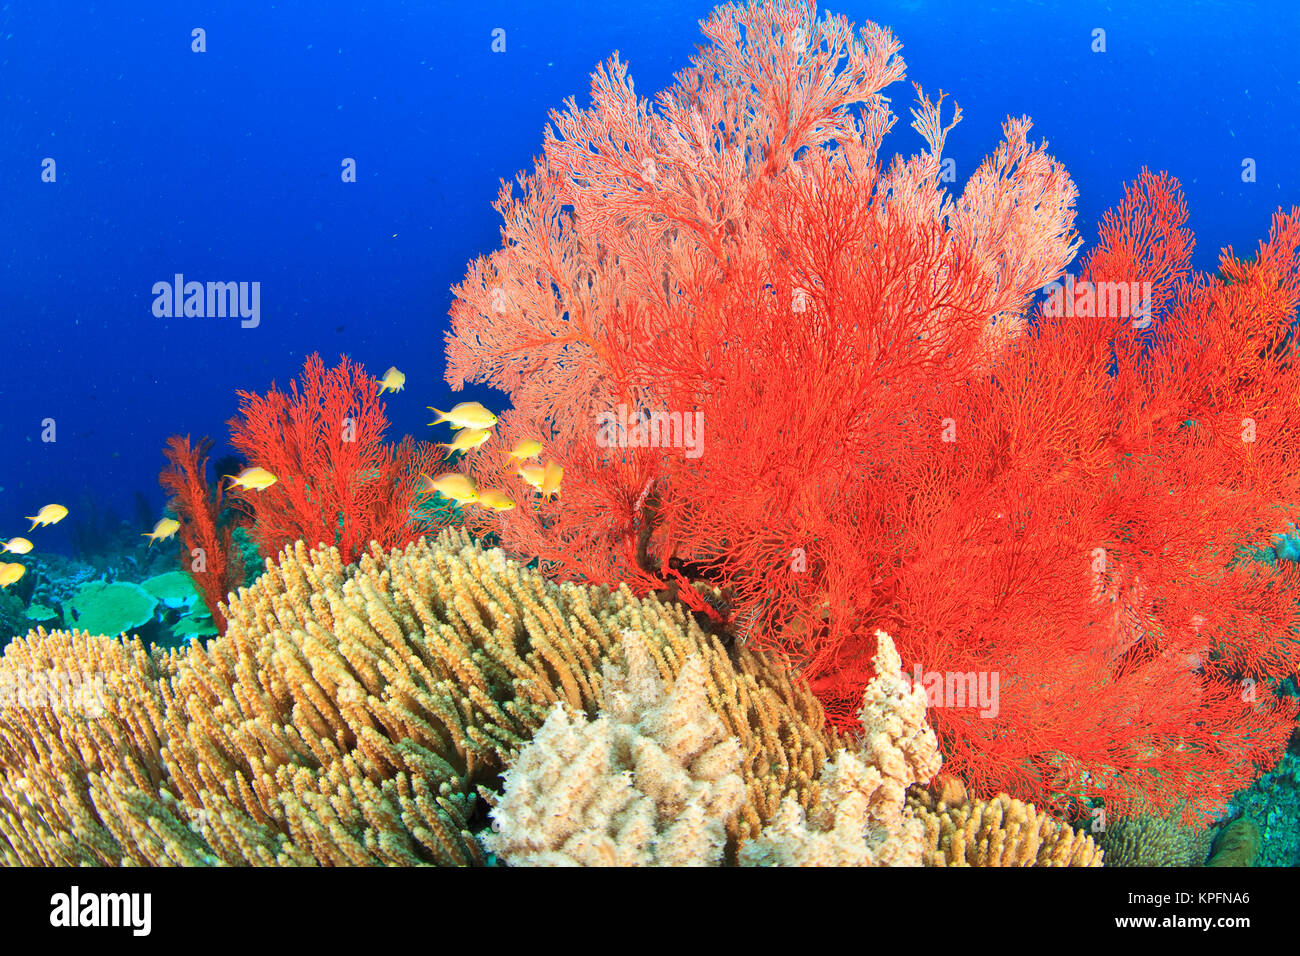 Brilliant red sea fans (Melithaea sp. ), Komba Island, Flores Sea, Indonesia Stock Photo